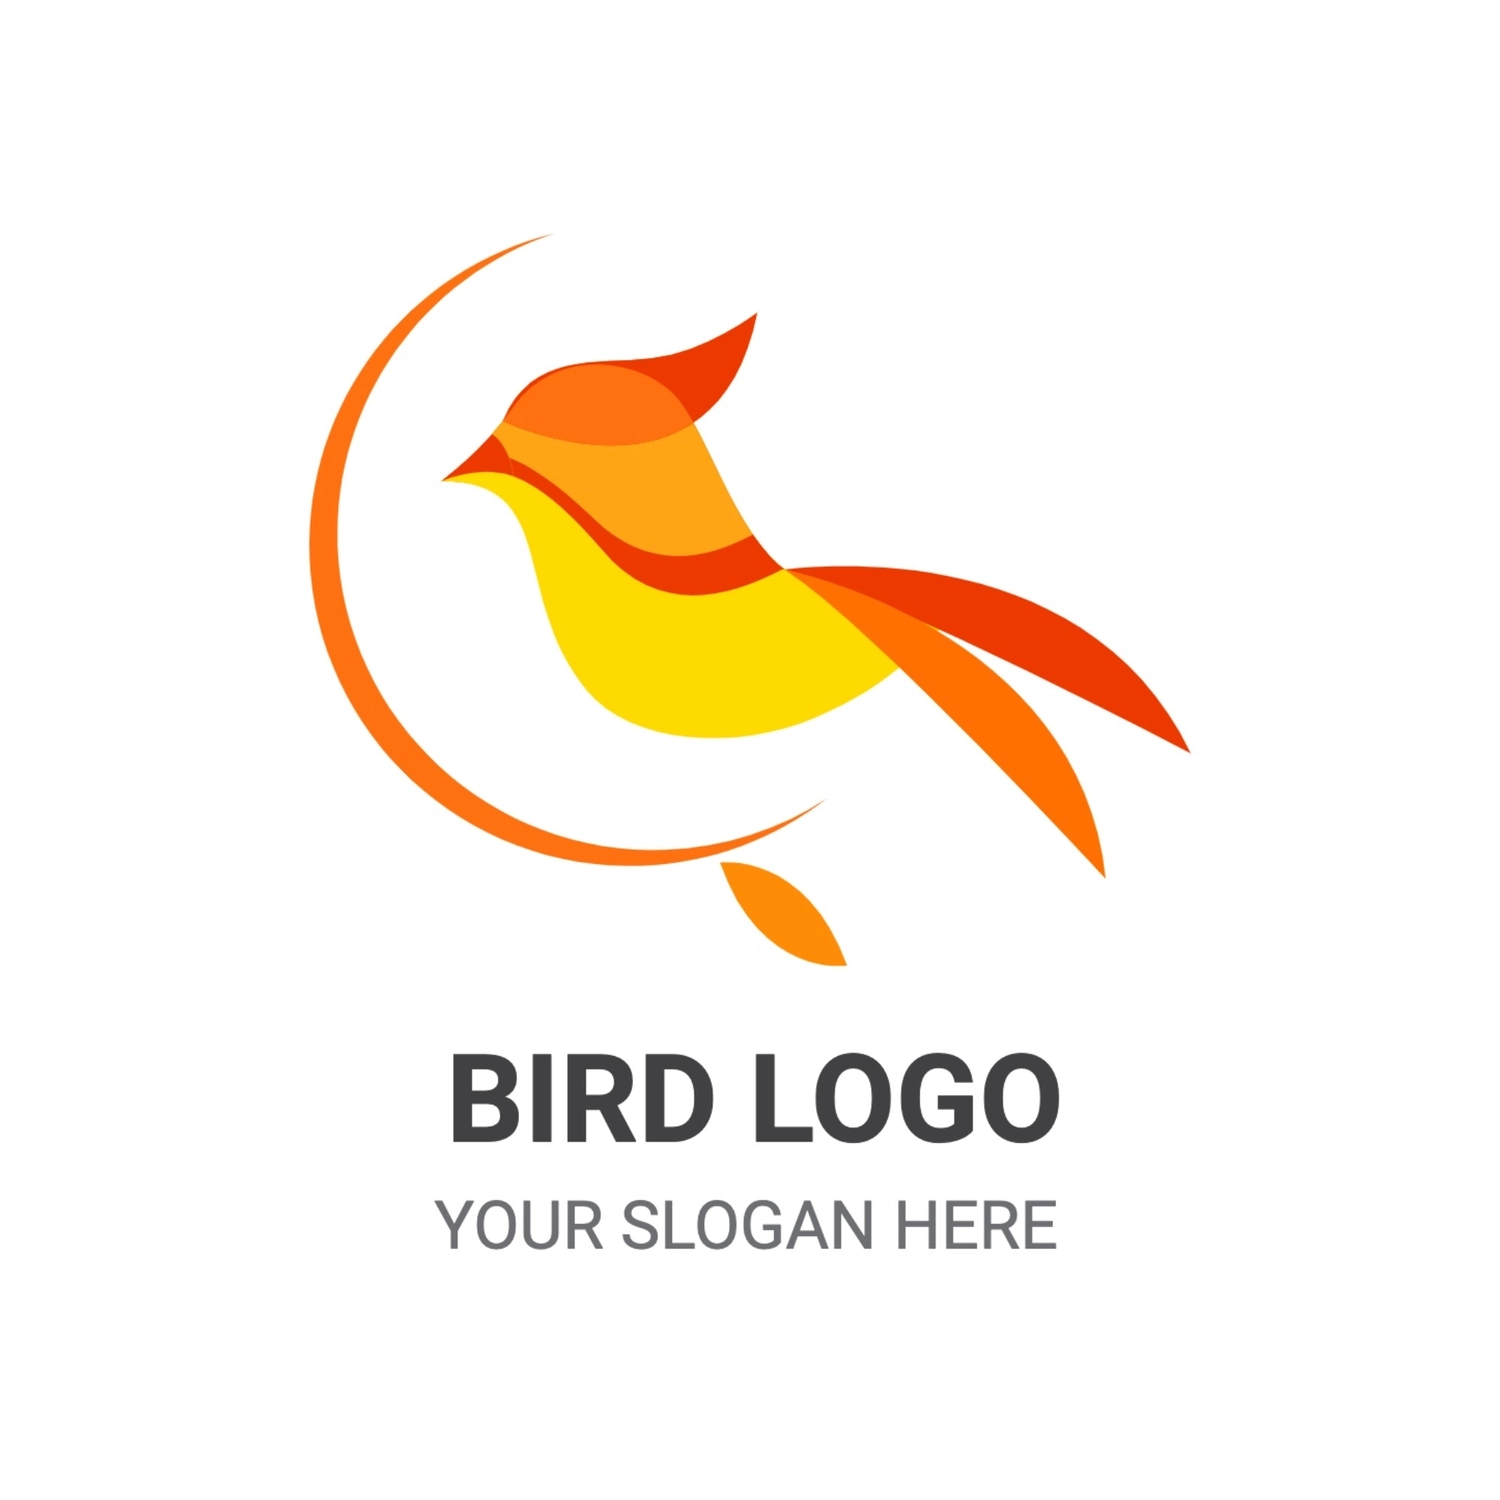 オレンジの鳥のロゴ, イラスト, 作成, デザイン, ロゴテンプレート